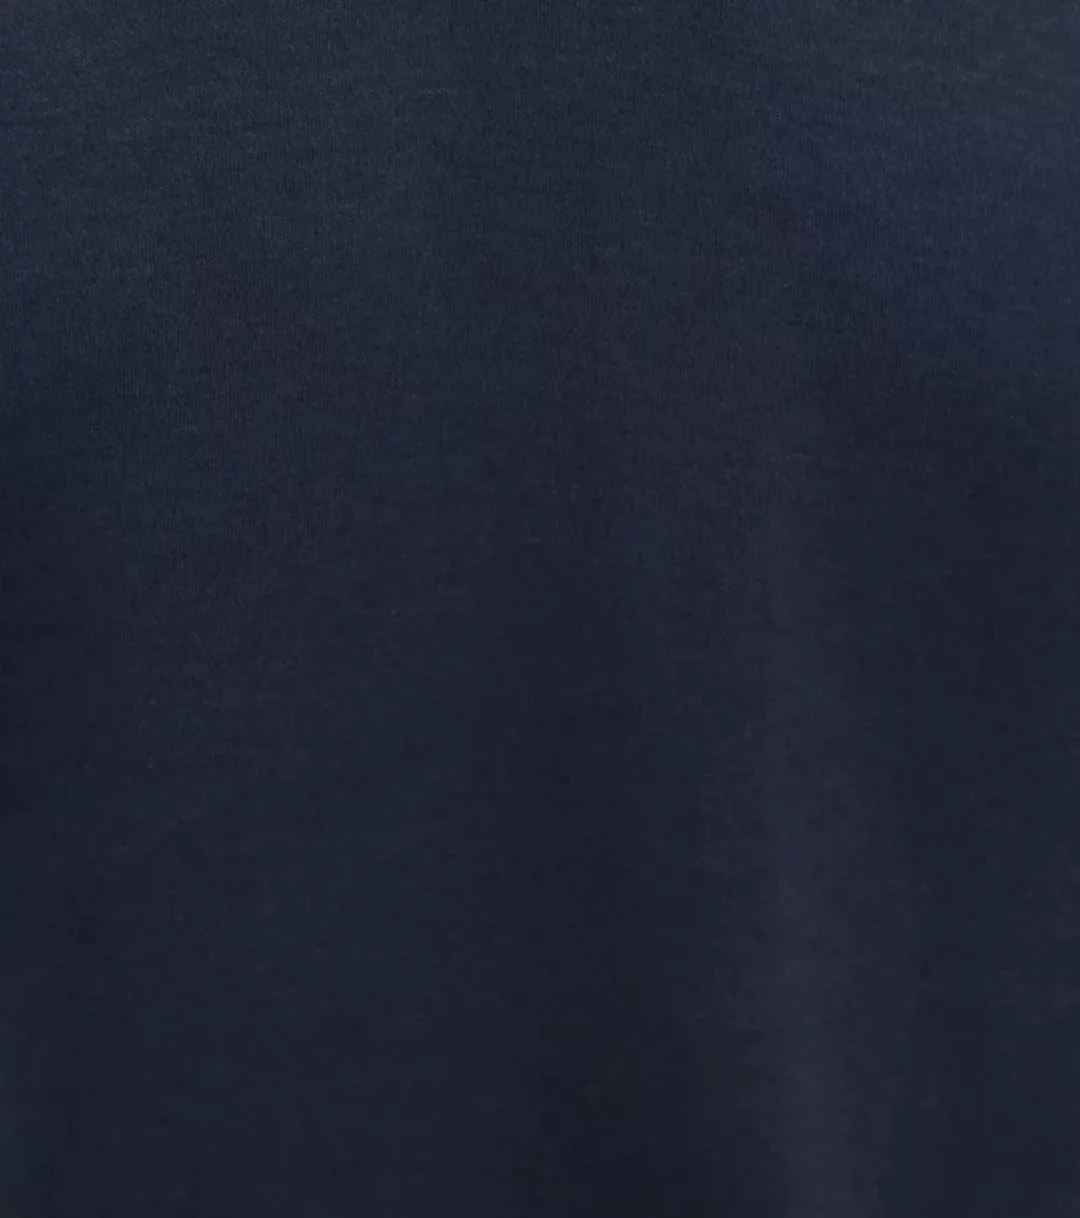 Suitable Liquid Poloshirt Navy - Größe XXL günstig online kaufen